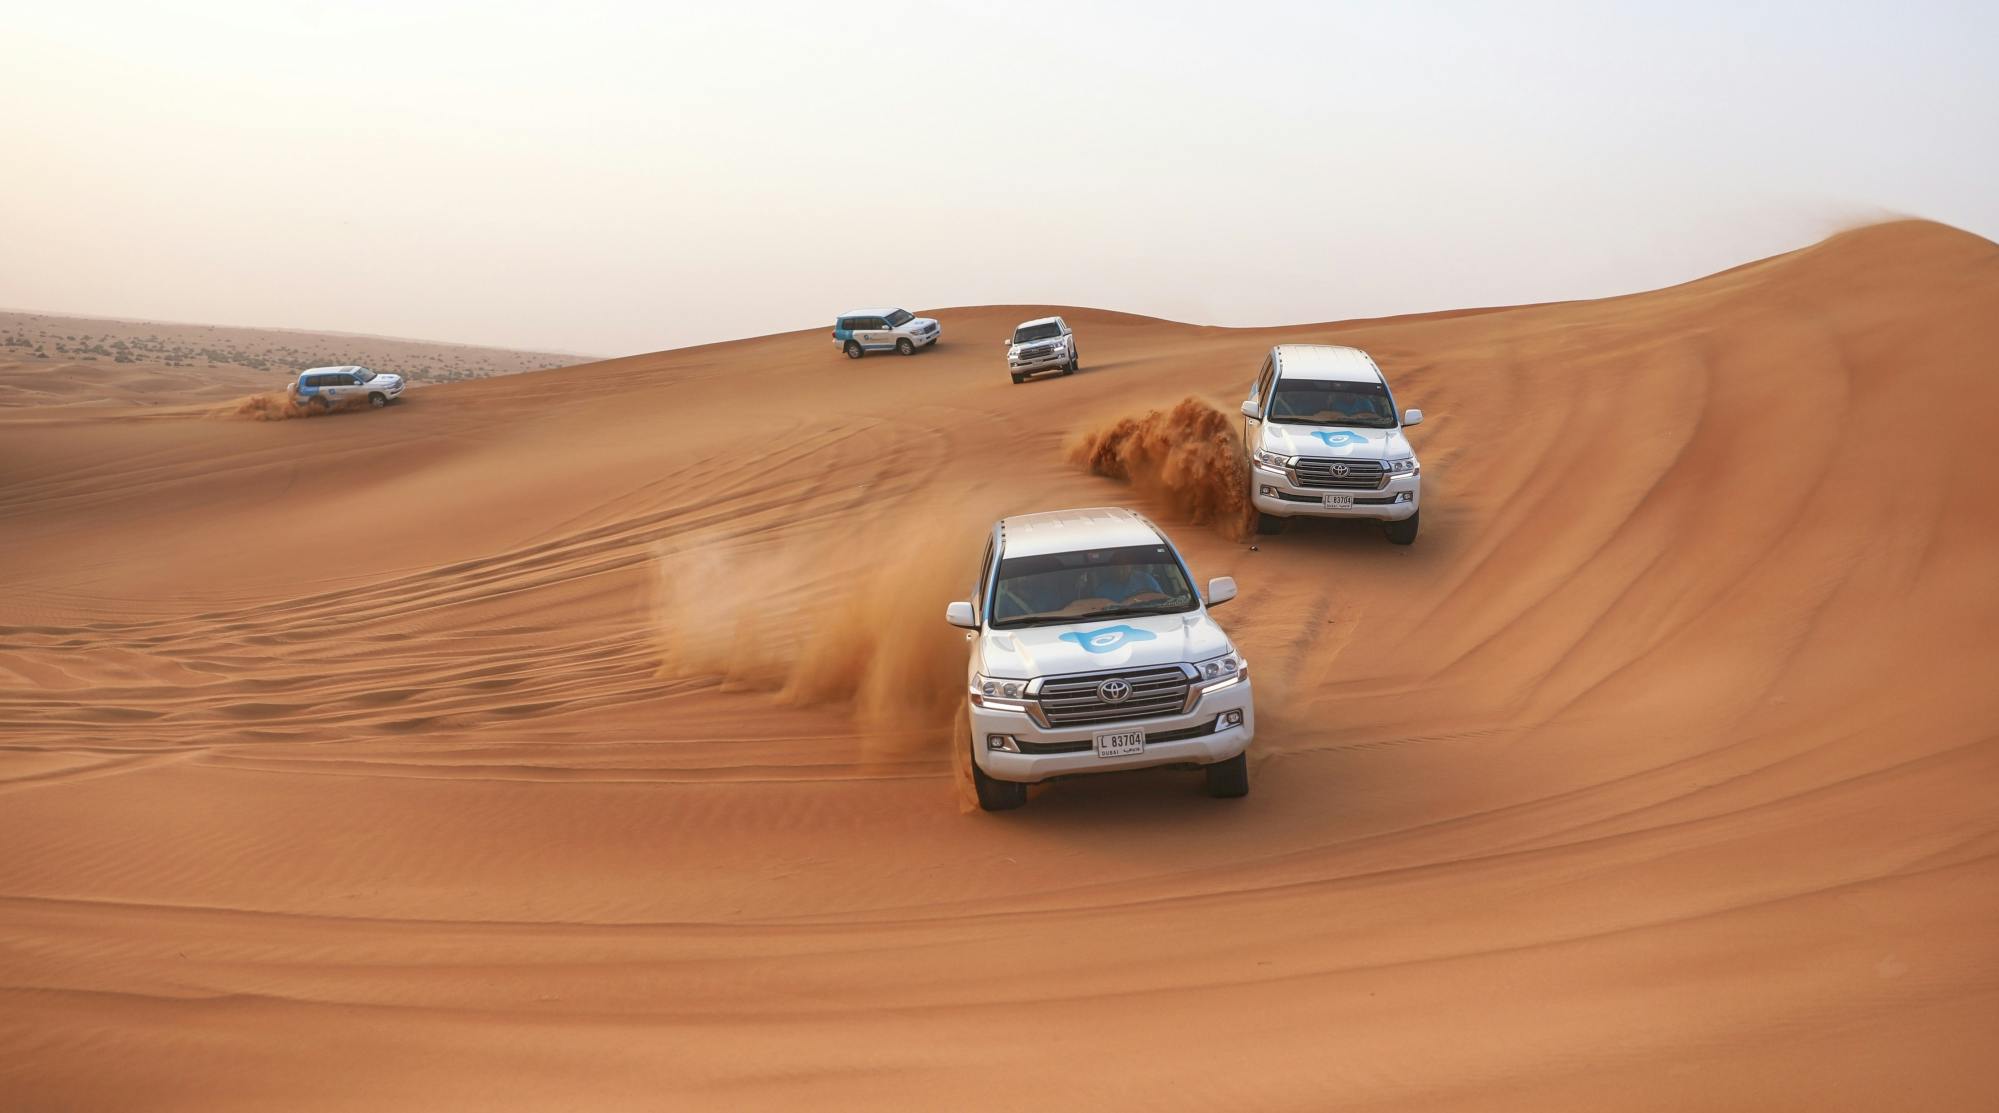 Dubai ochtendwoestijnsafari met dune bashen, sandboarden, kameelrijden